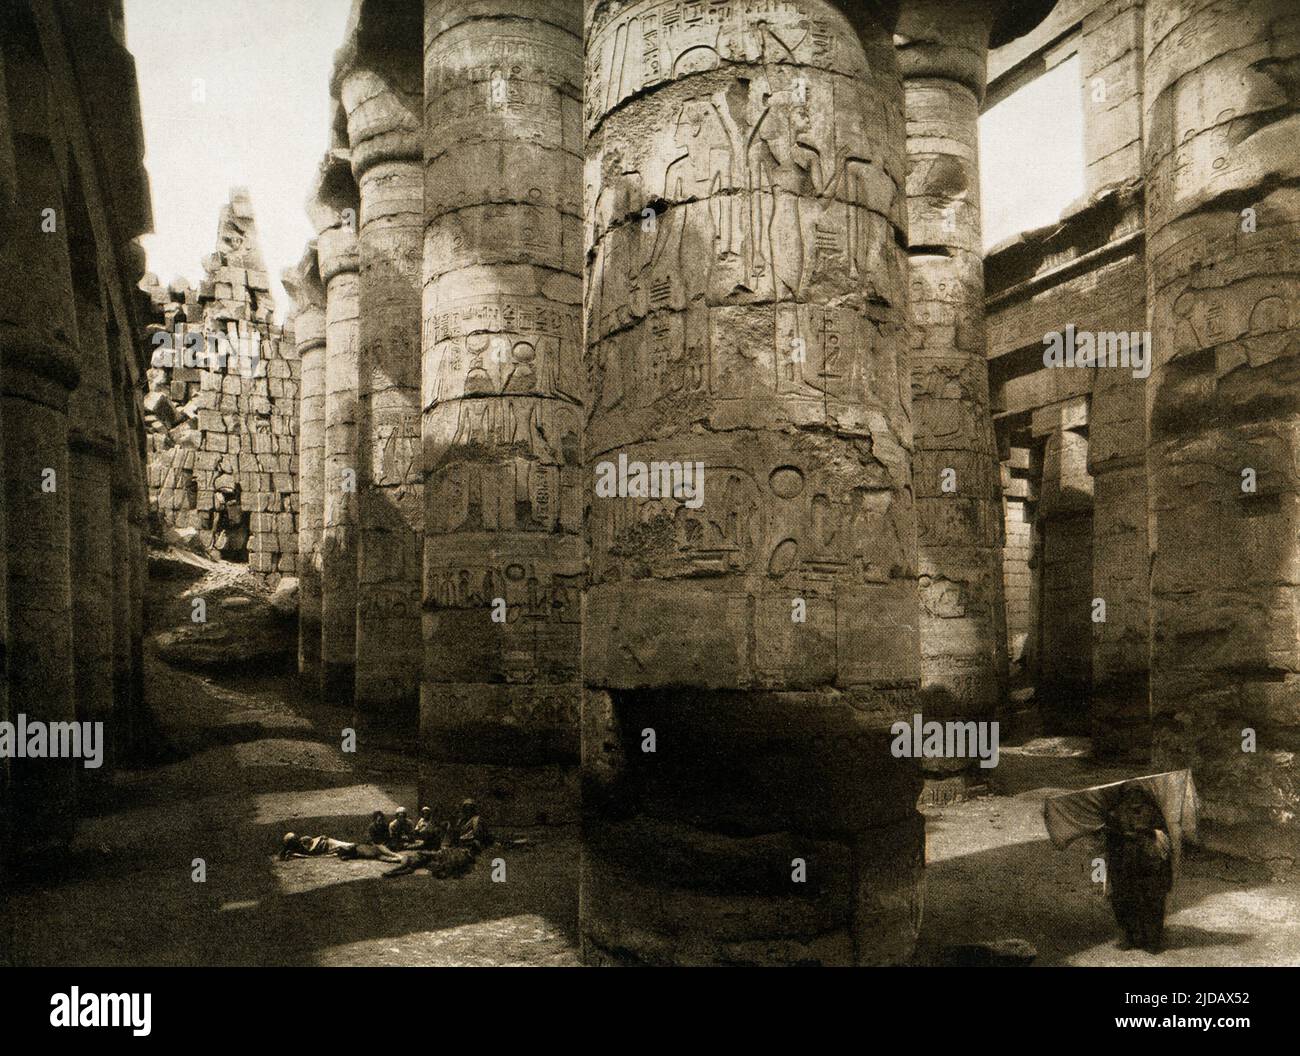 Esta imagen de 1910 muestra las ruinas de la Sala de Columnas de Karnak. El Gran Salón Hipoestilo Karnak está compuesto de 134 columnas gigantes de arenisca en forma de tallos de papiro. Doce grandes columnas en su nave central tienen más de 70 pies de altura y están cubiertas por enormes capiteles abiertos de flores de papiro. El eje principal este-oeste de la sala hipostyle está dominado por una doble fila de 12 columnas gigantes. Esta imagen es de un fotograbado en Egipto por los arqueólogos alemanes Ebers y Junghaendel. Foto de stock